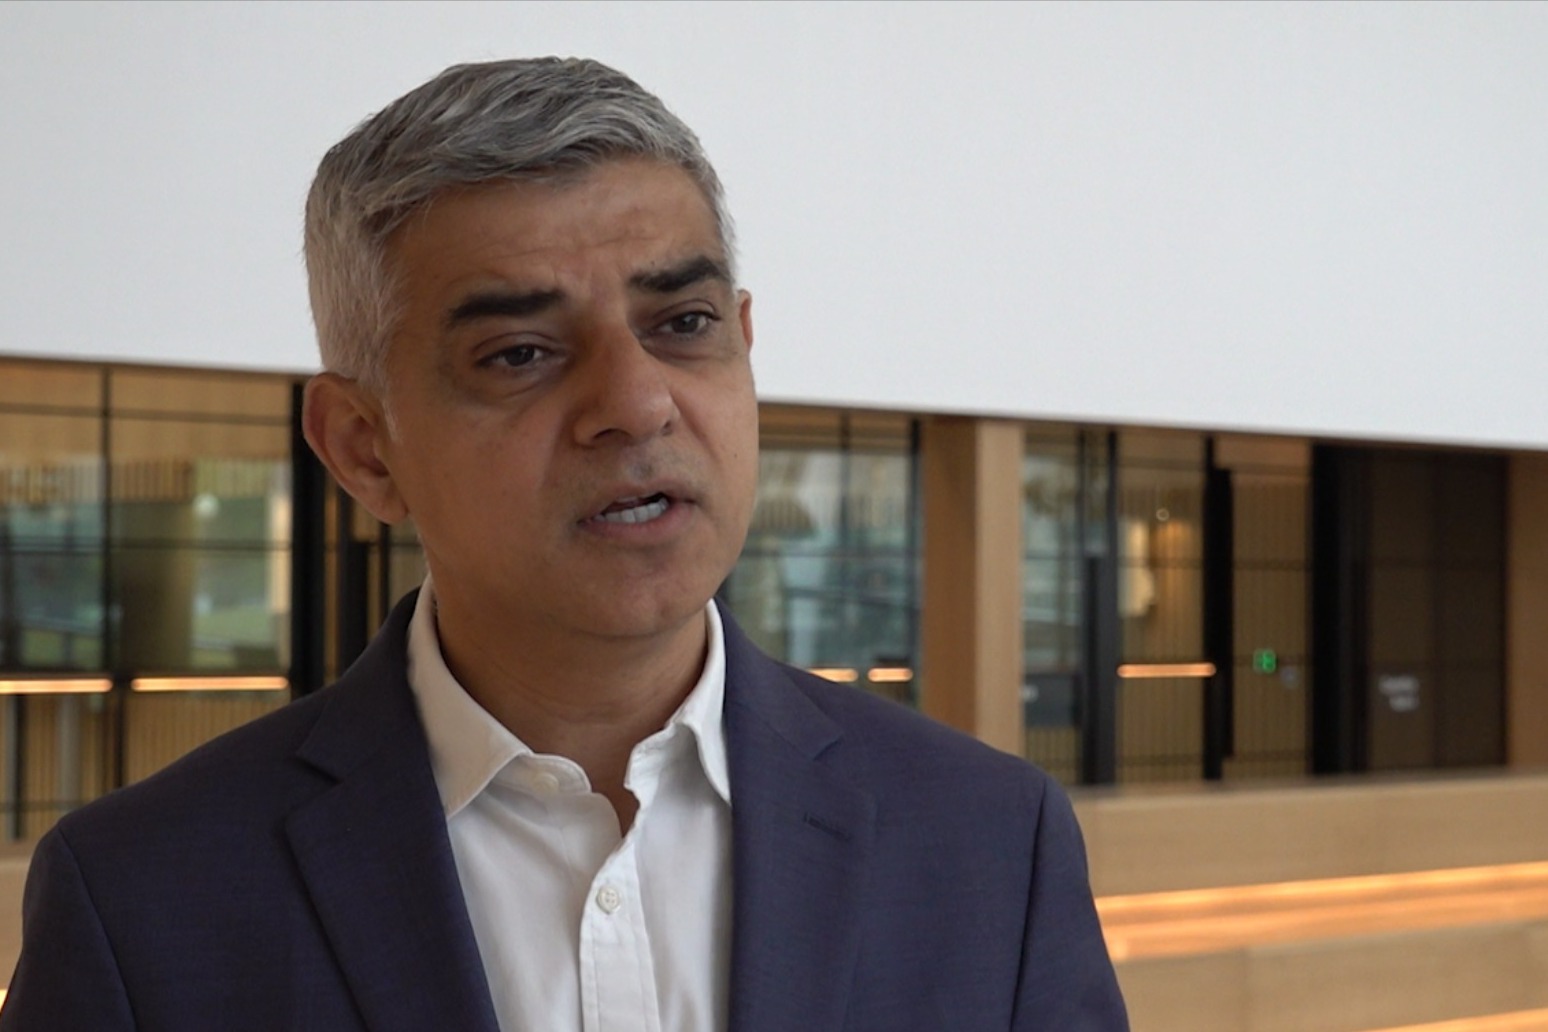 Cost of living could impact violent crime, warns London mayor Sadiq Khan 